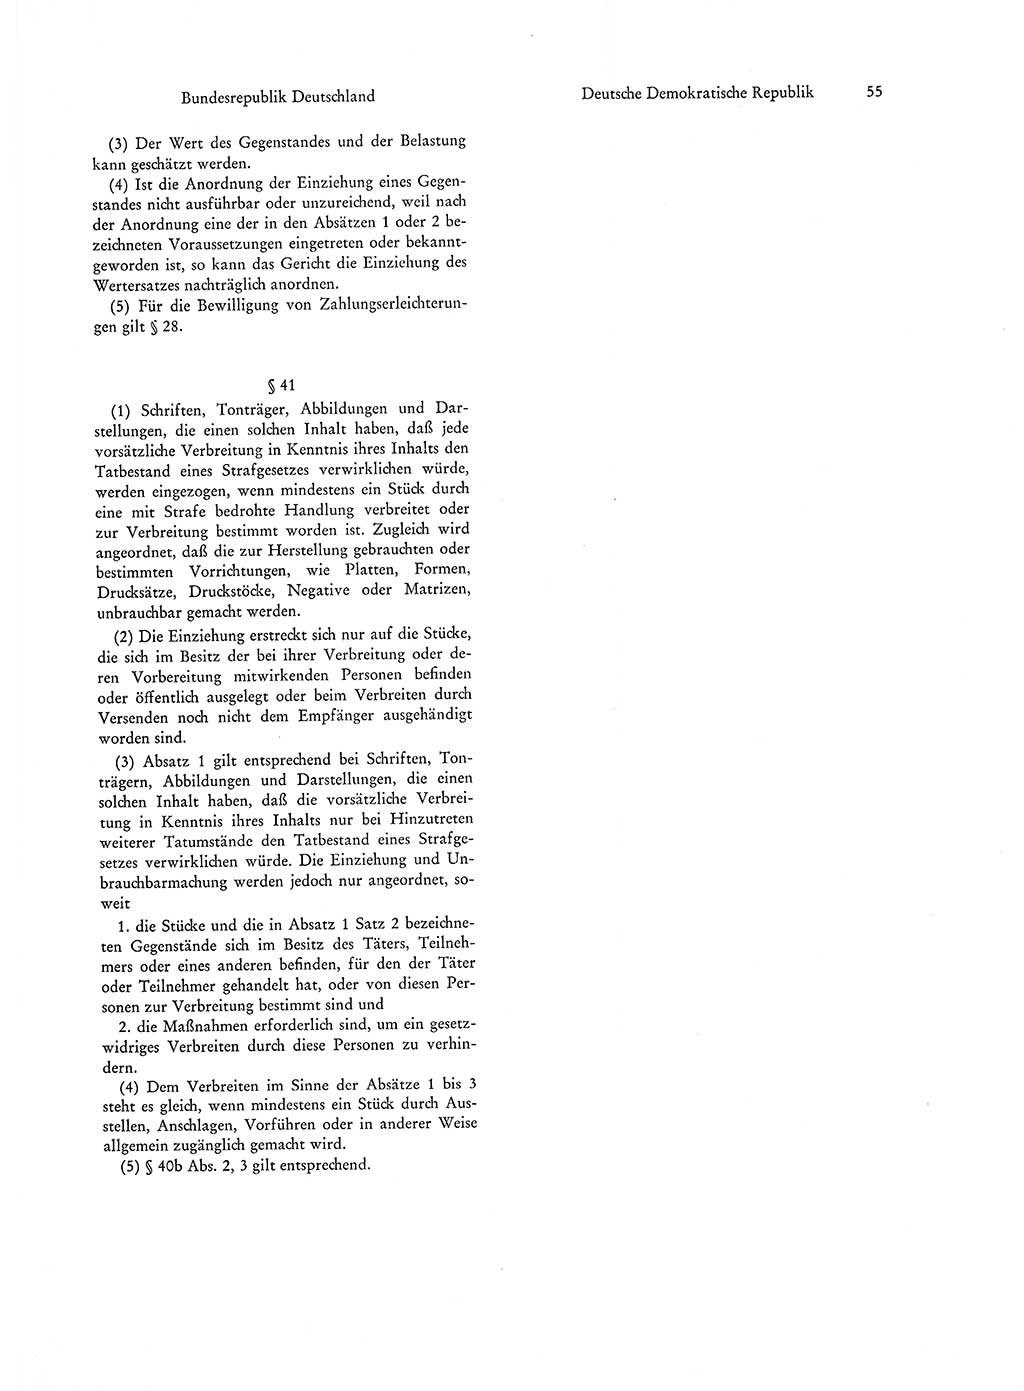 Strafgesetzgebung in Deutschland [Bundesrepublik Deutschland (BRD) und Deutsche Demokratische Republik (DDR)] 1972, Seite 55 (Str.-Ges. Dtl. StGB BRD DDR 1972, S. 55)